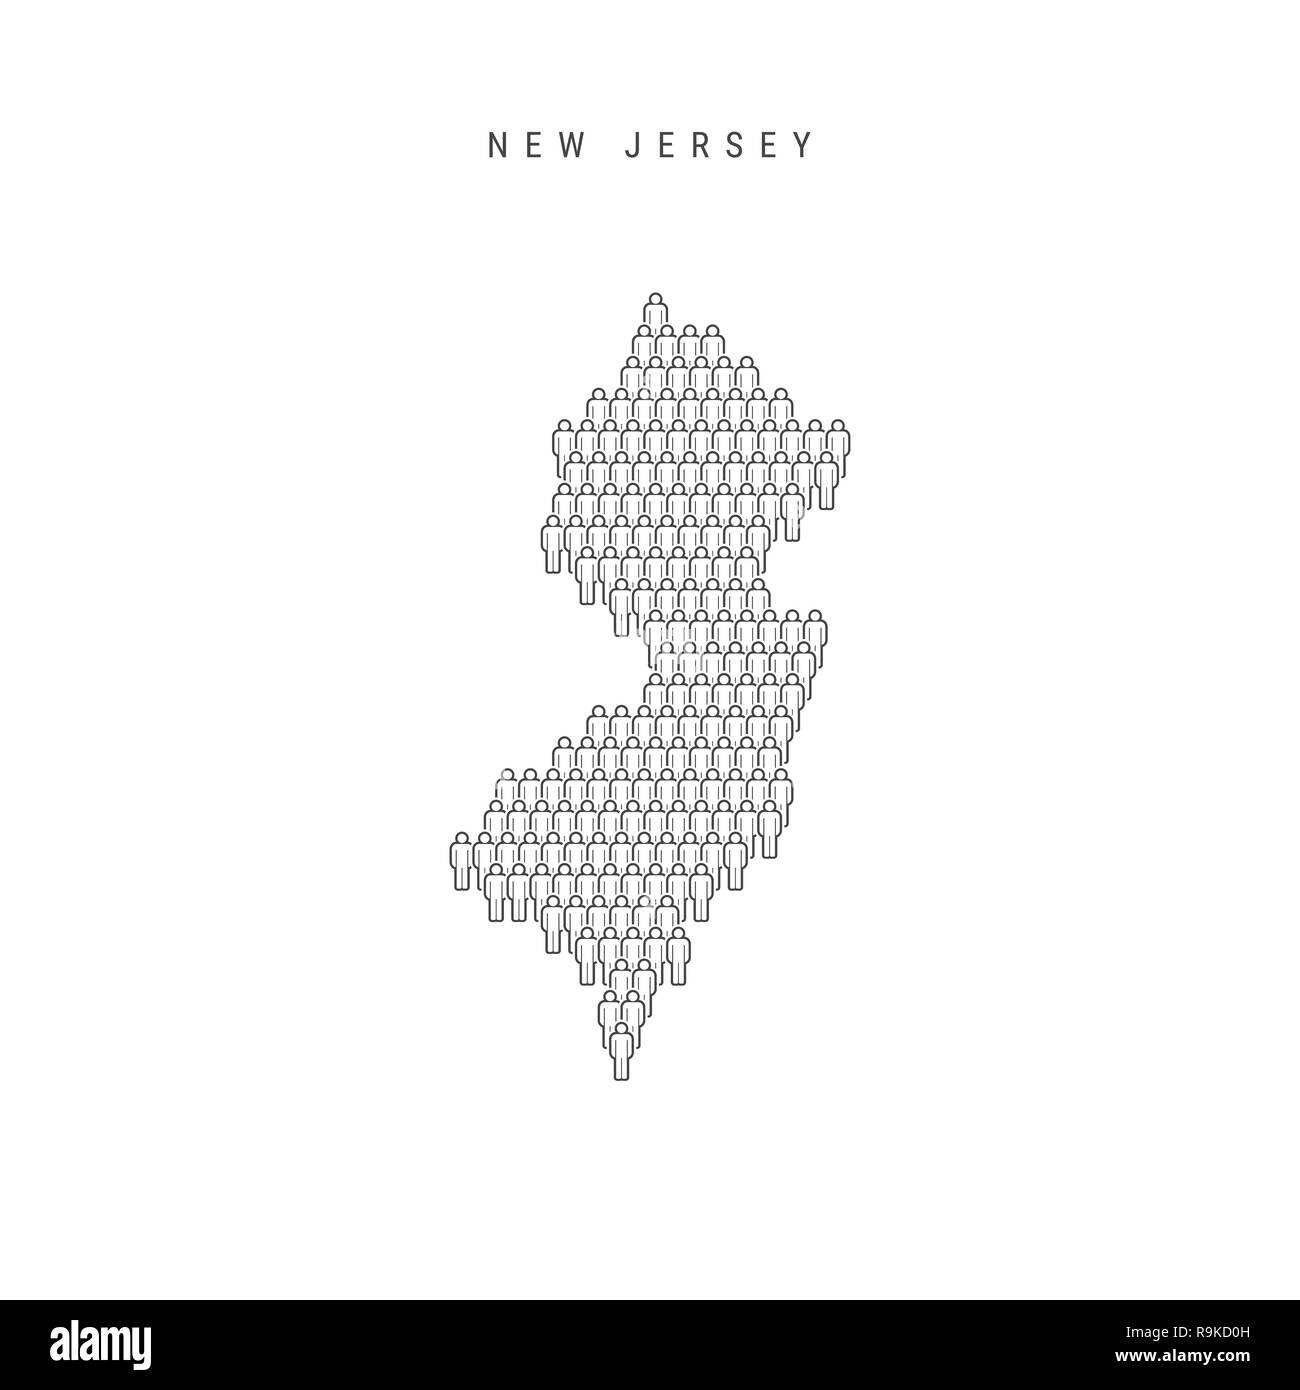 Leute Karte von New Jersey, USA. Stilisierte Silhouette, Leute in der Form einer Karte von New Jersey. New Jersey Bevölkerung. Abbildung: Isolieren Stockfoto